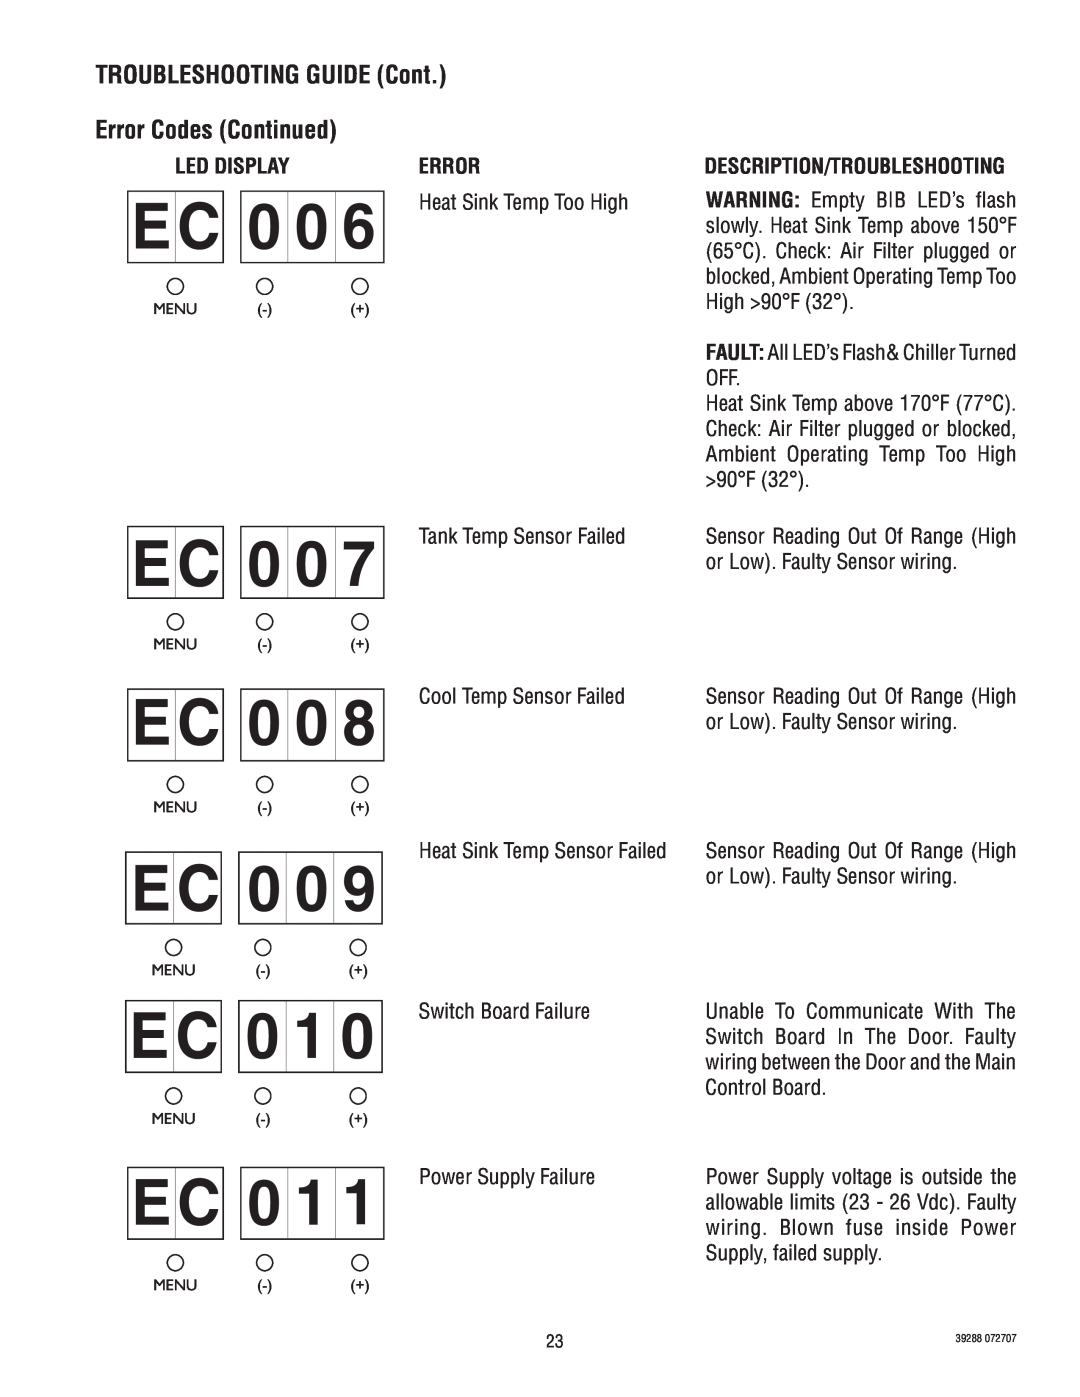 Bunn LCC-2 service manual EC006, EC007, EC008, EC010, EC011, TROUBLESHOOTING GUIDE Cont, Error Codes Continued, Led Display 